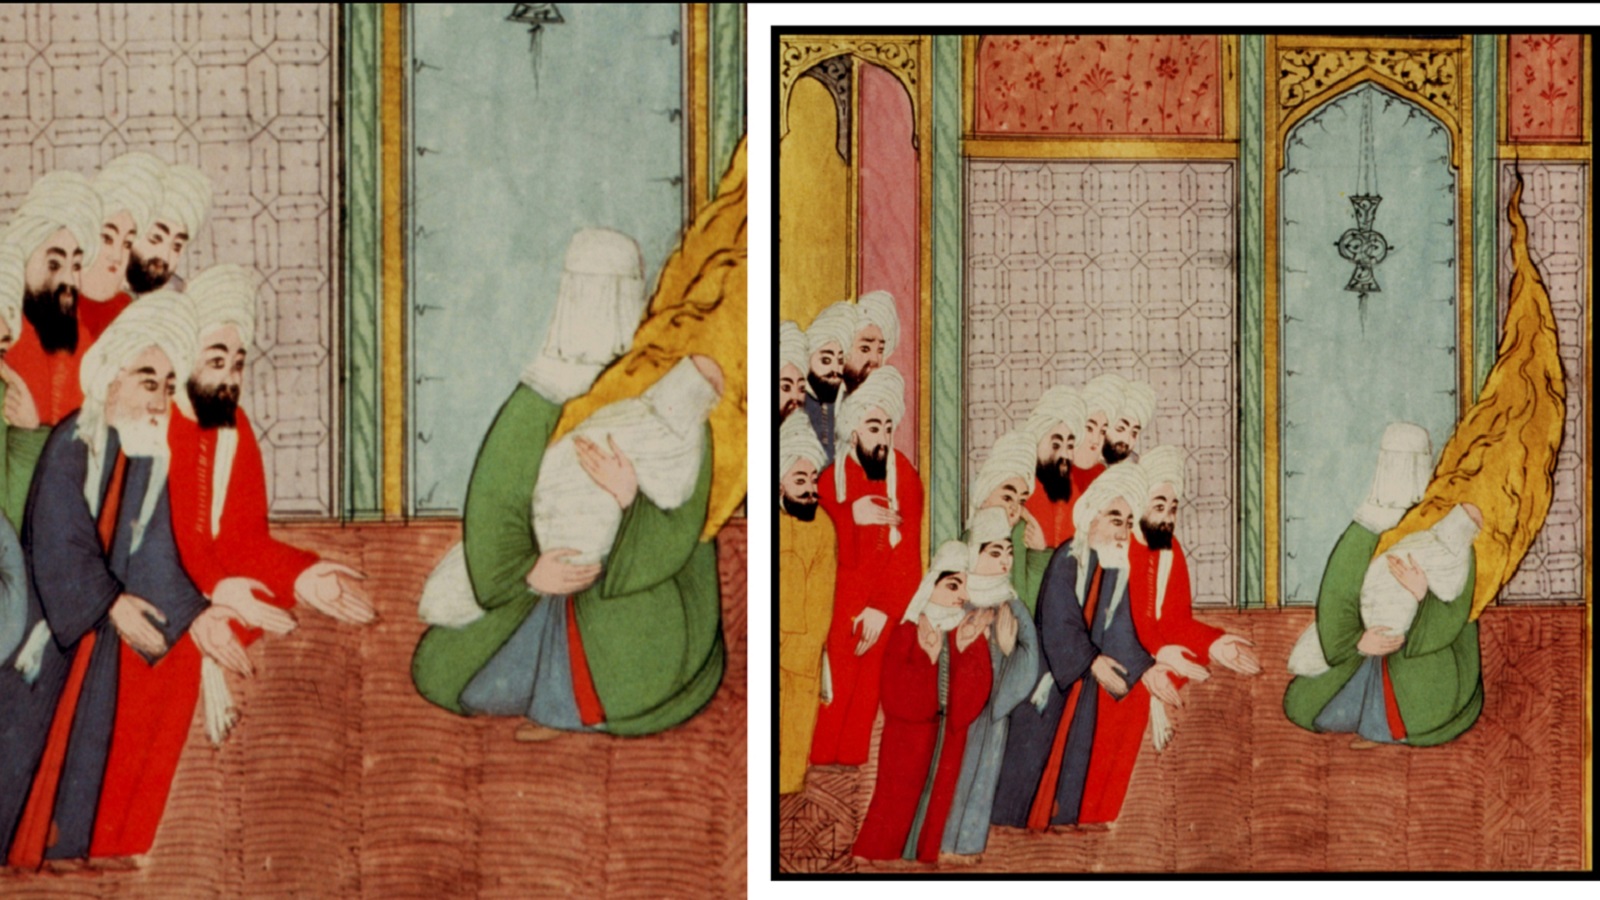 عبد المطلب مع قومه أمام آمنة والنبي والوليد، "جامع سير النبي"، اسطنبول، نهاية القرن السادس عشر، سرايا توبكابي.